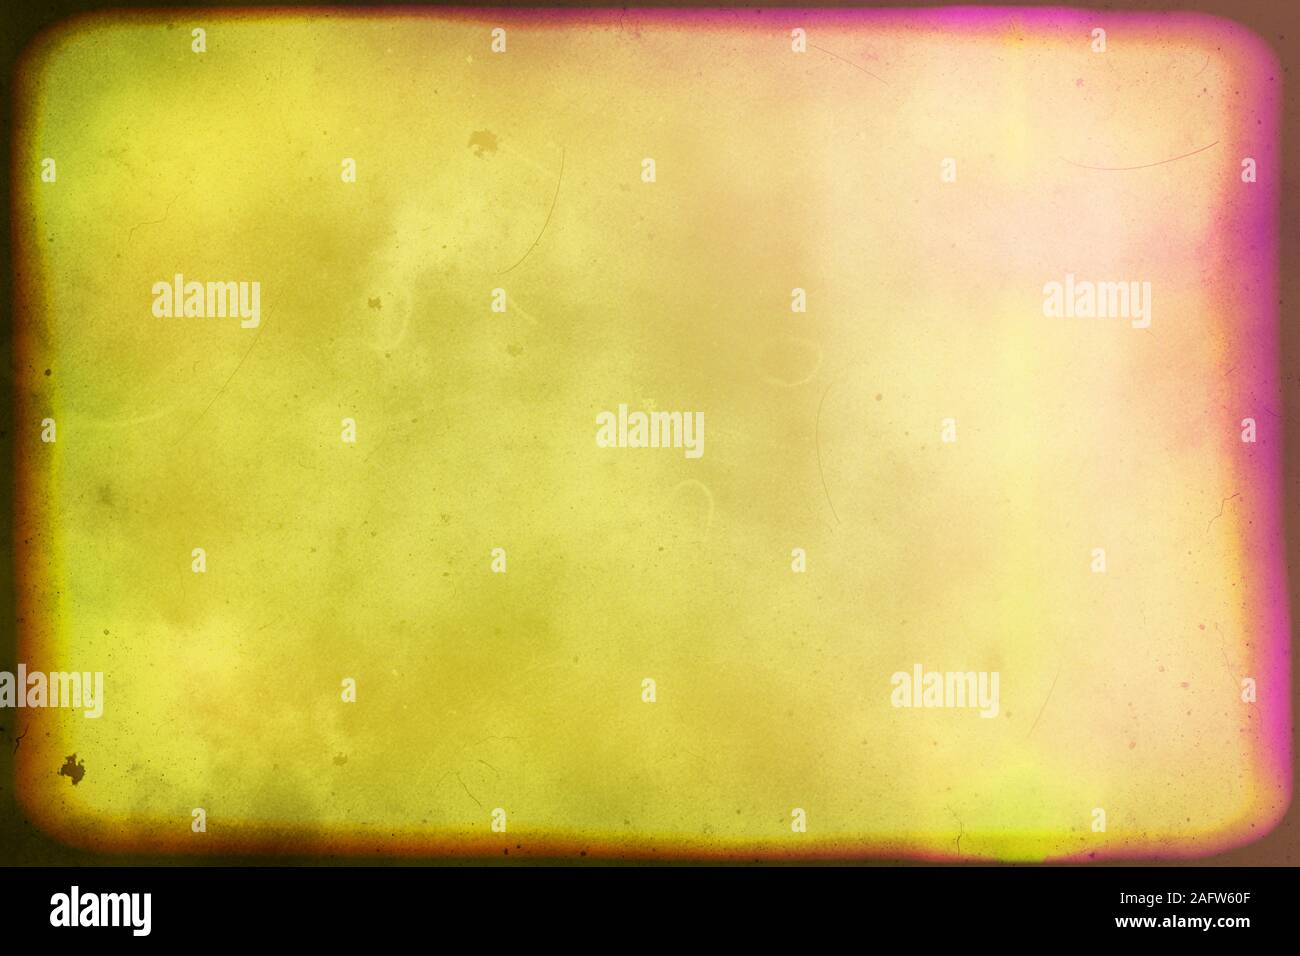 Nahaufnahme des bunten alten Film/Film leichte Undichtigkeiten Textur Hintergrund, Ansicht von oben (Hochauflösende 2D-CG rendering Illustration) Stockfoto